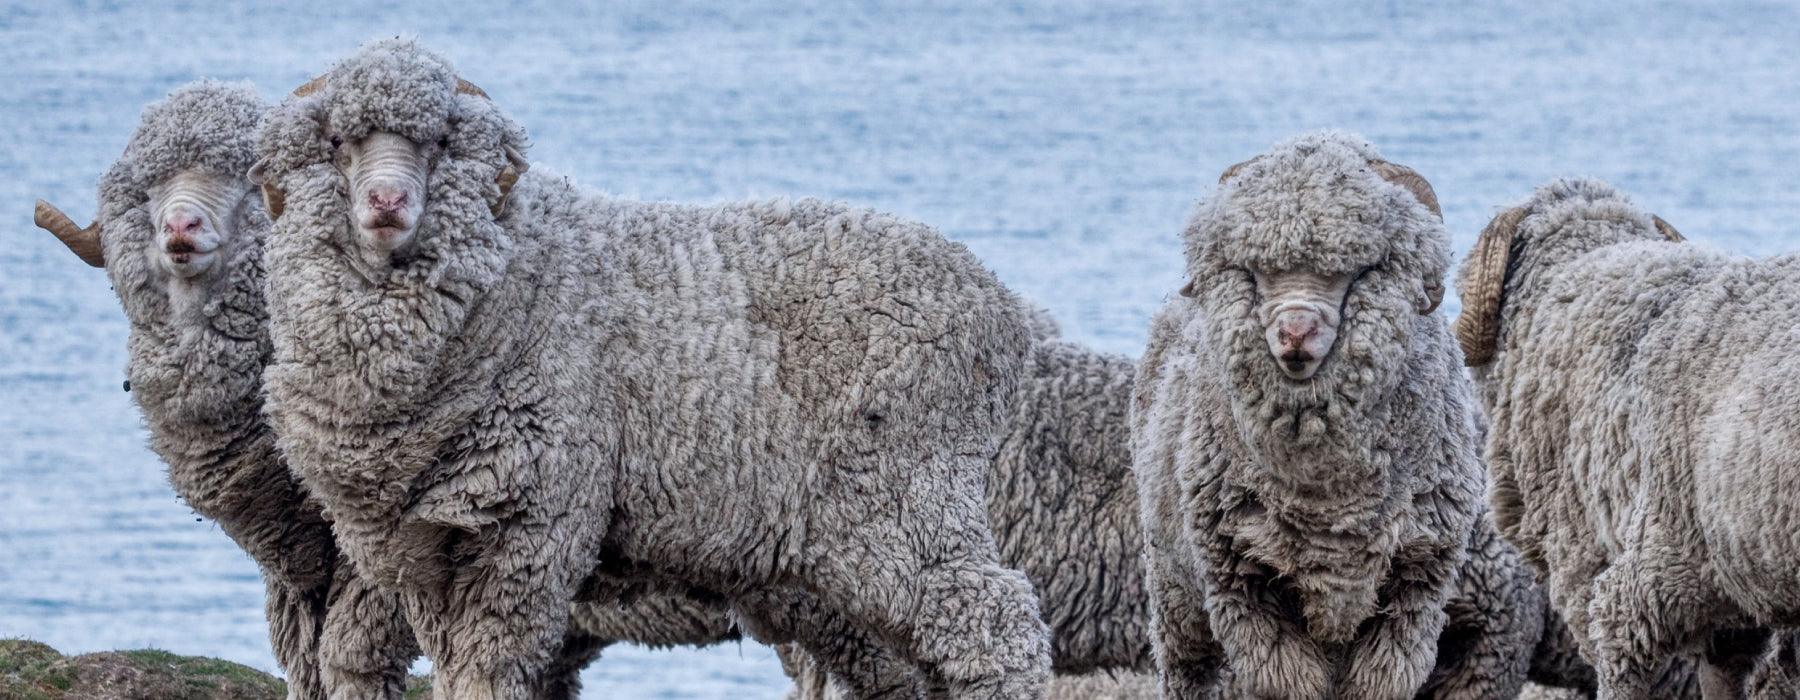 Merino wool sheep flock standing near water